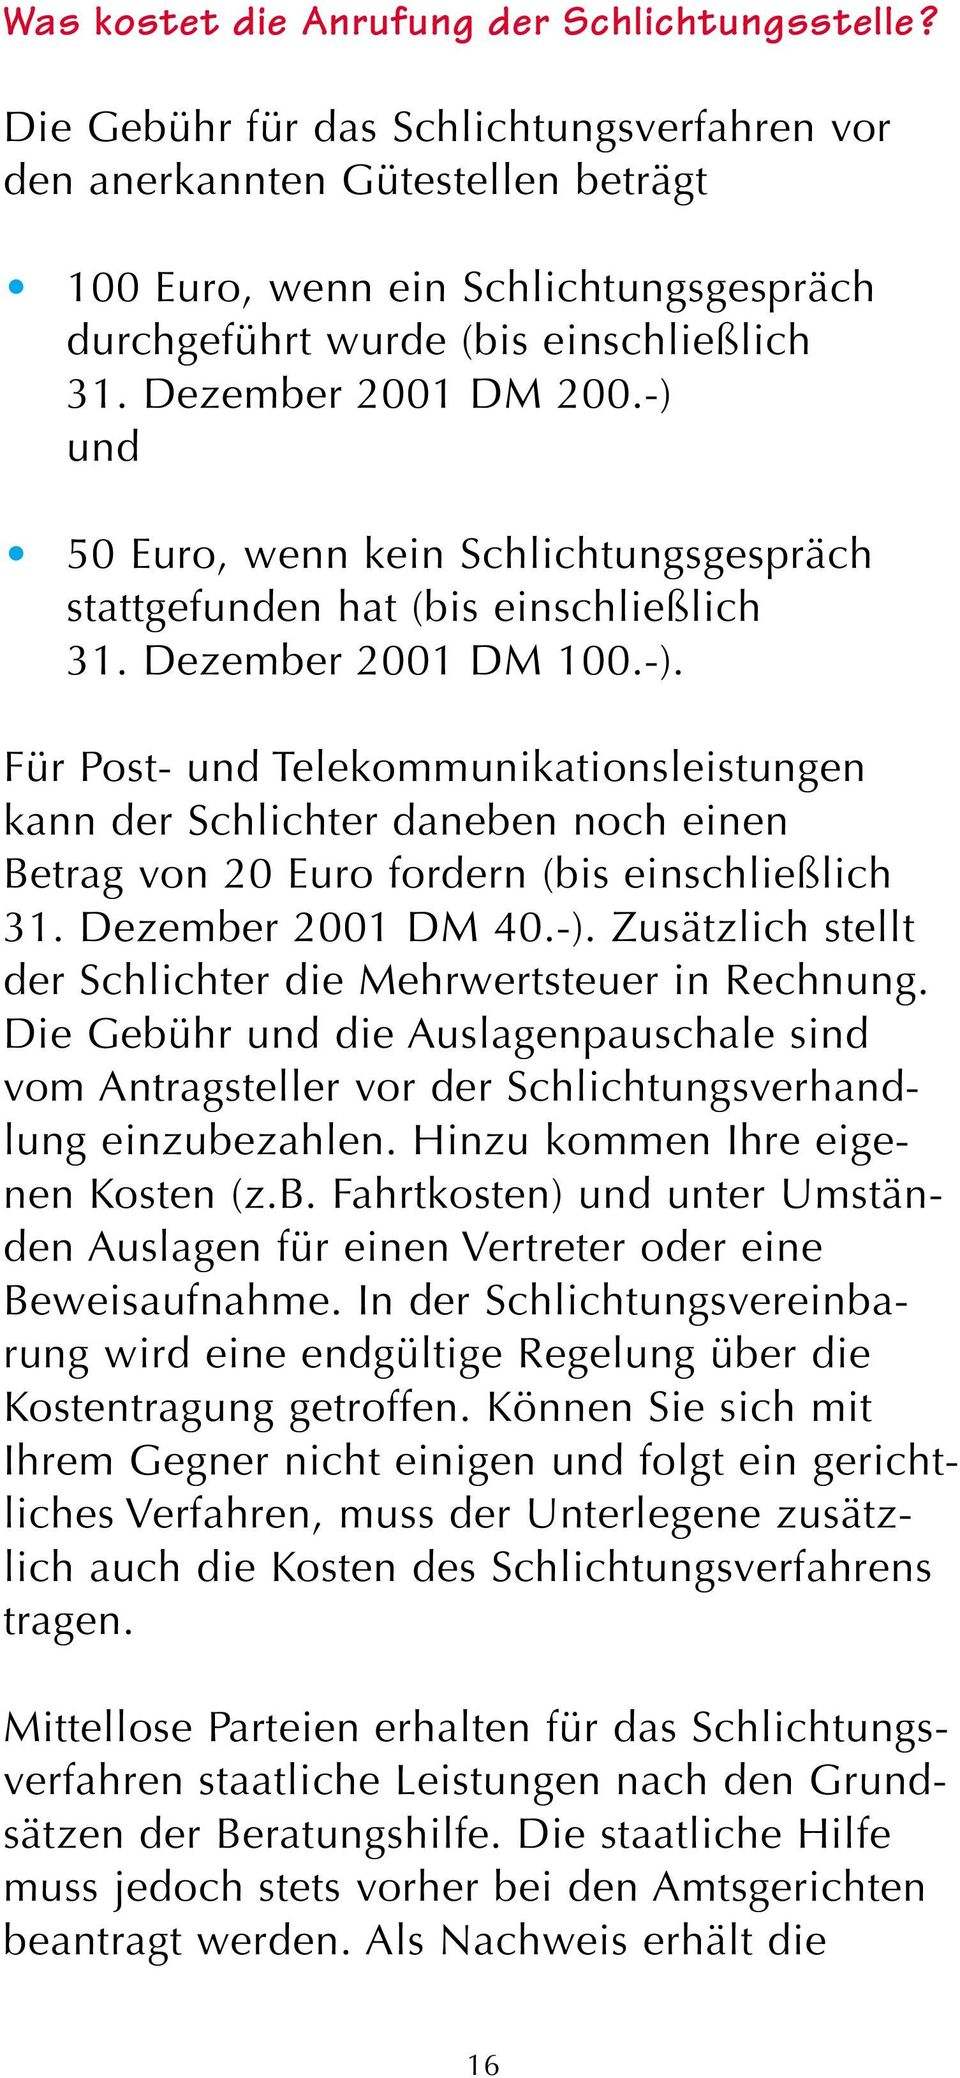 -) und 50 Euro, wenn kein Schlichtungsgespräch stattgefunden hat (bis einschließlich 31. Dezember 2001 DM 100.-). Für Post- und Telekommunikationsleistungen kann der Schlichter daneben noch einen Betrag von 20 Euro fordern (bis einschließlich 31.